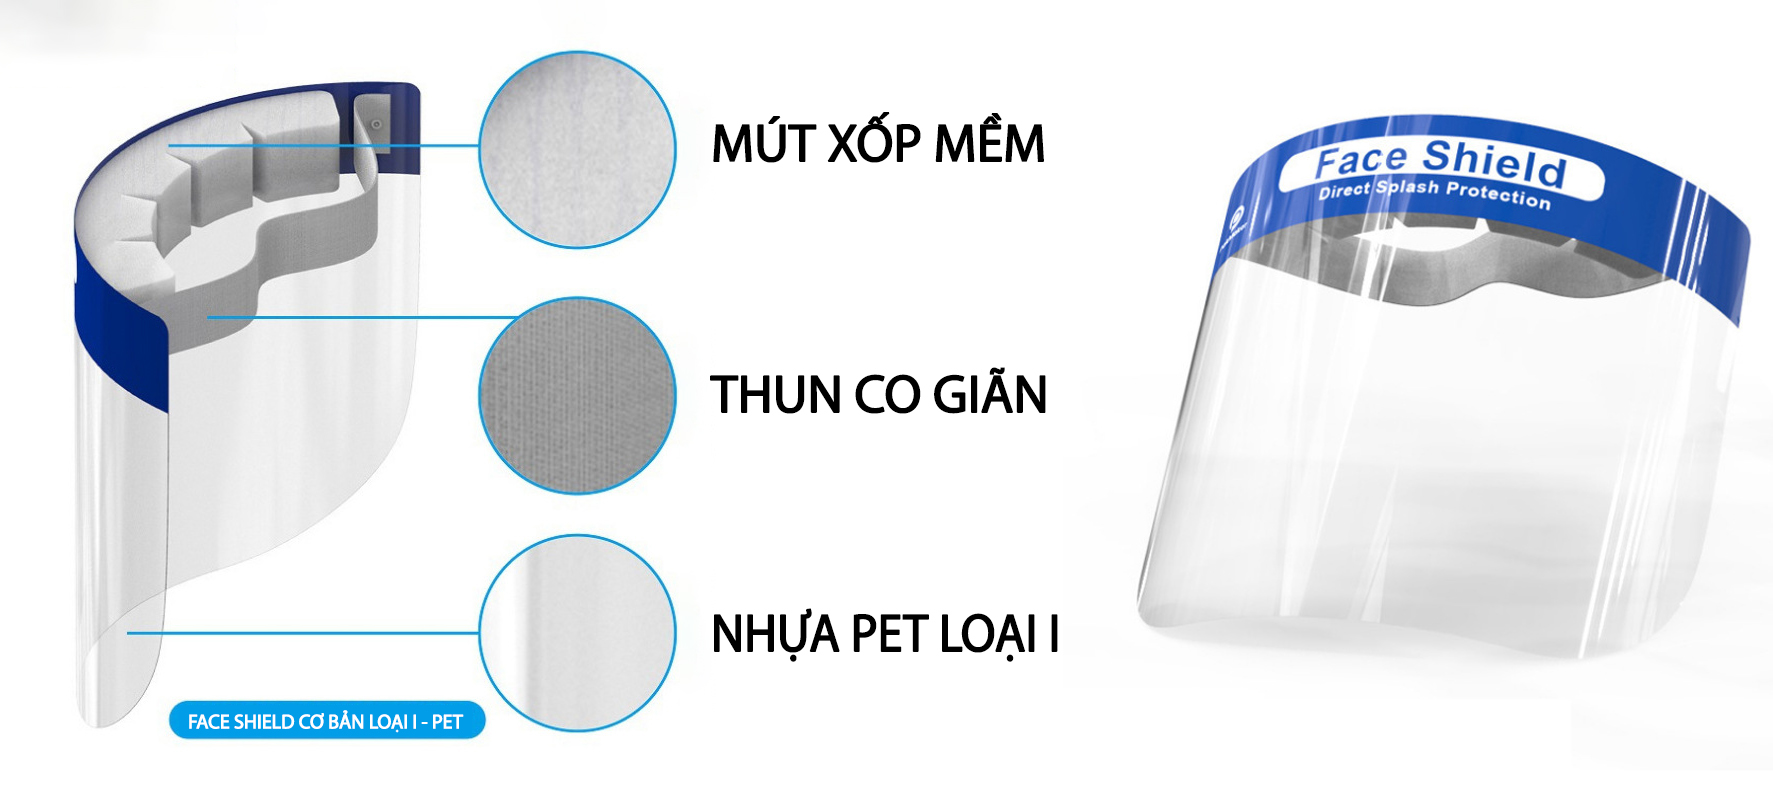 Face shield nhựa PET loại 1 chống giọt bắn, chống trầy được sản xuất số lượng lớn tại Việt Nam